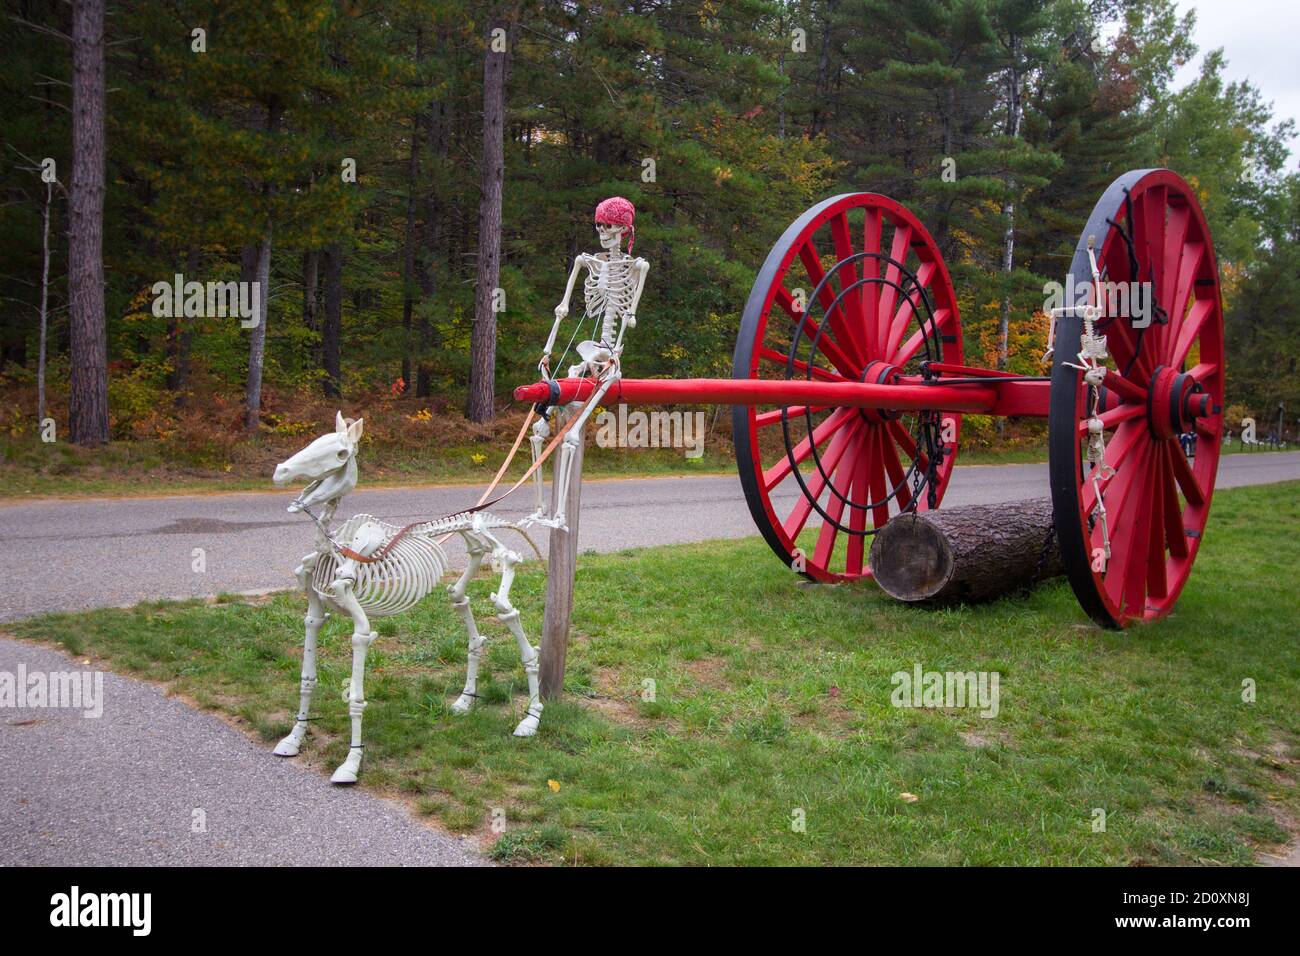 Las decoraciones de Halloween celebran el festival de la cosecha en el Parque Estatal Hartwick Pines en Michigan. Foto de stock